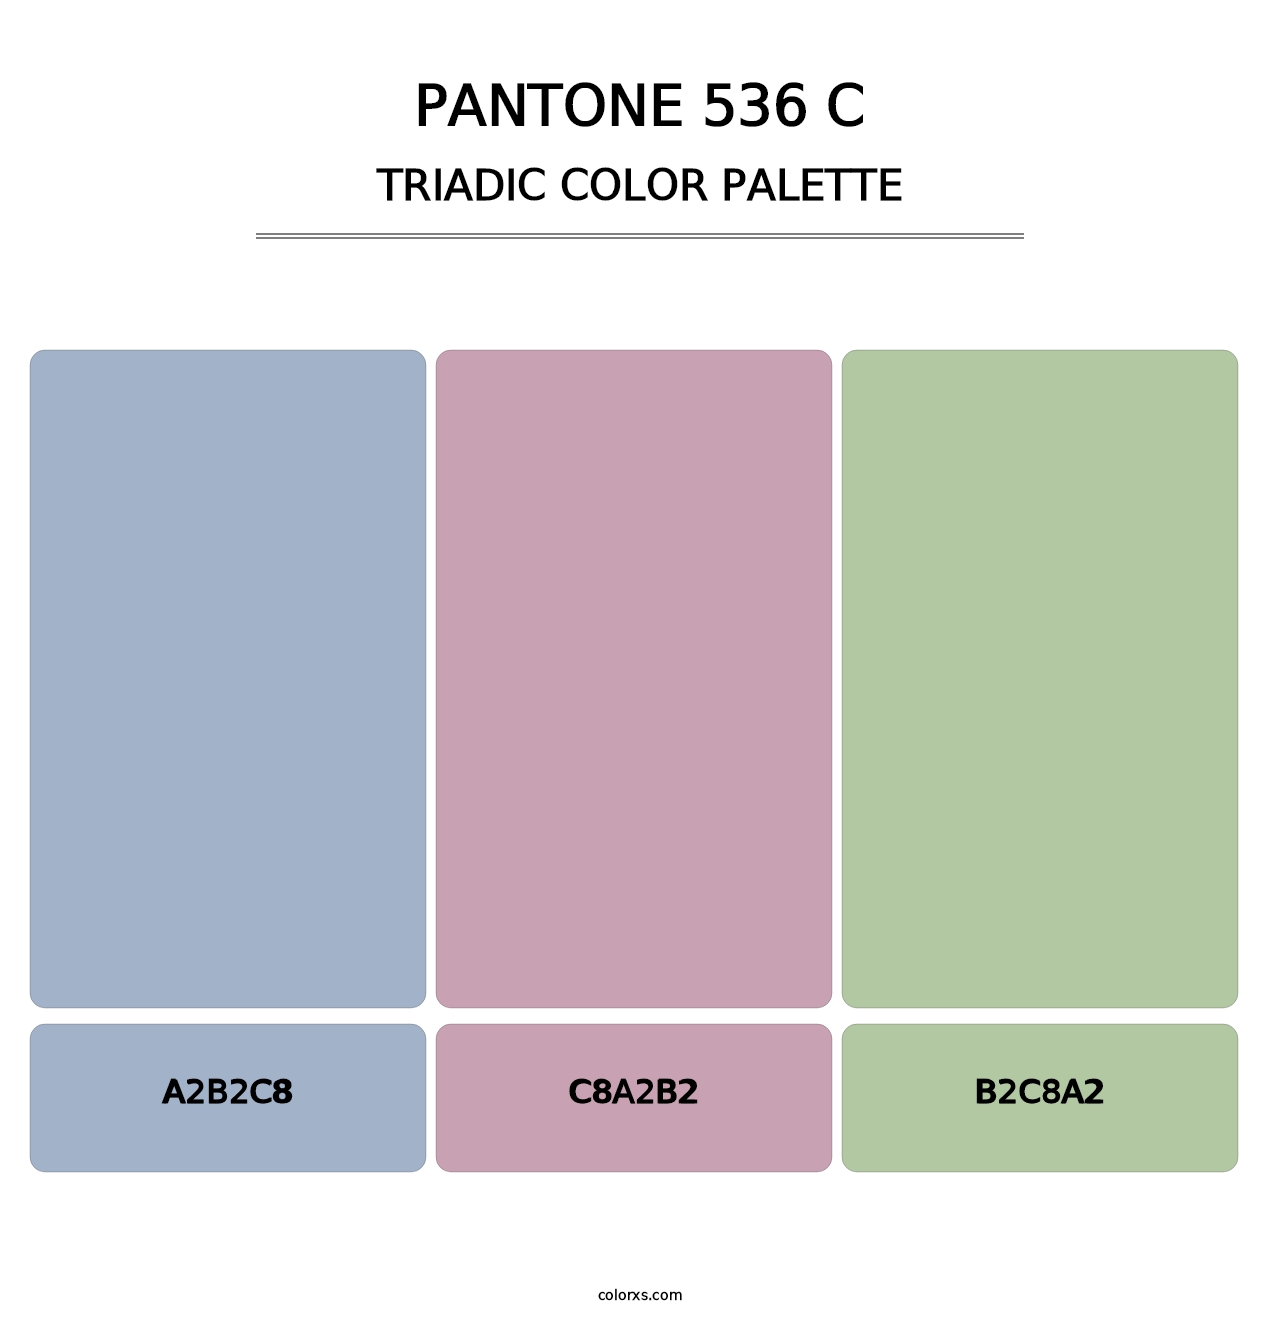 PANTONE 536 C - Triadic Color Palette